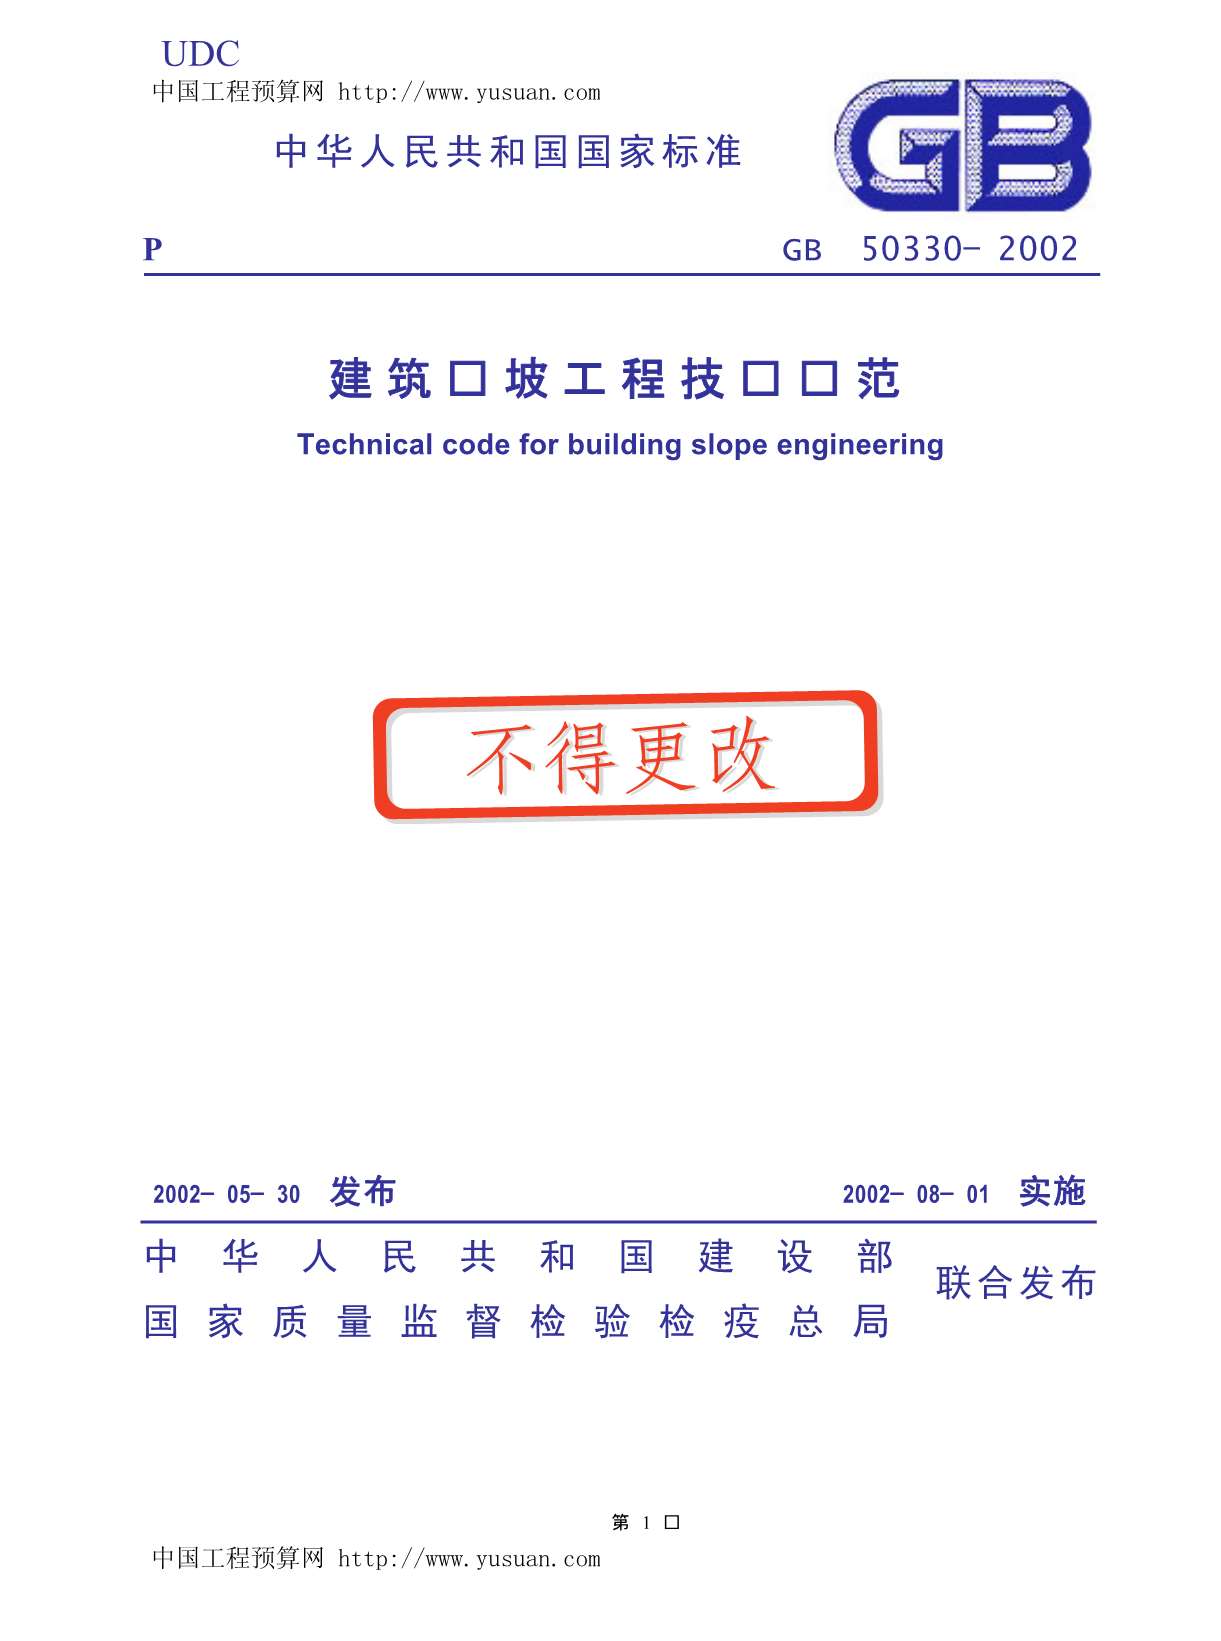 GB50330-2002建筑边坡工程技术规范